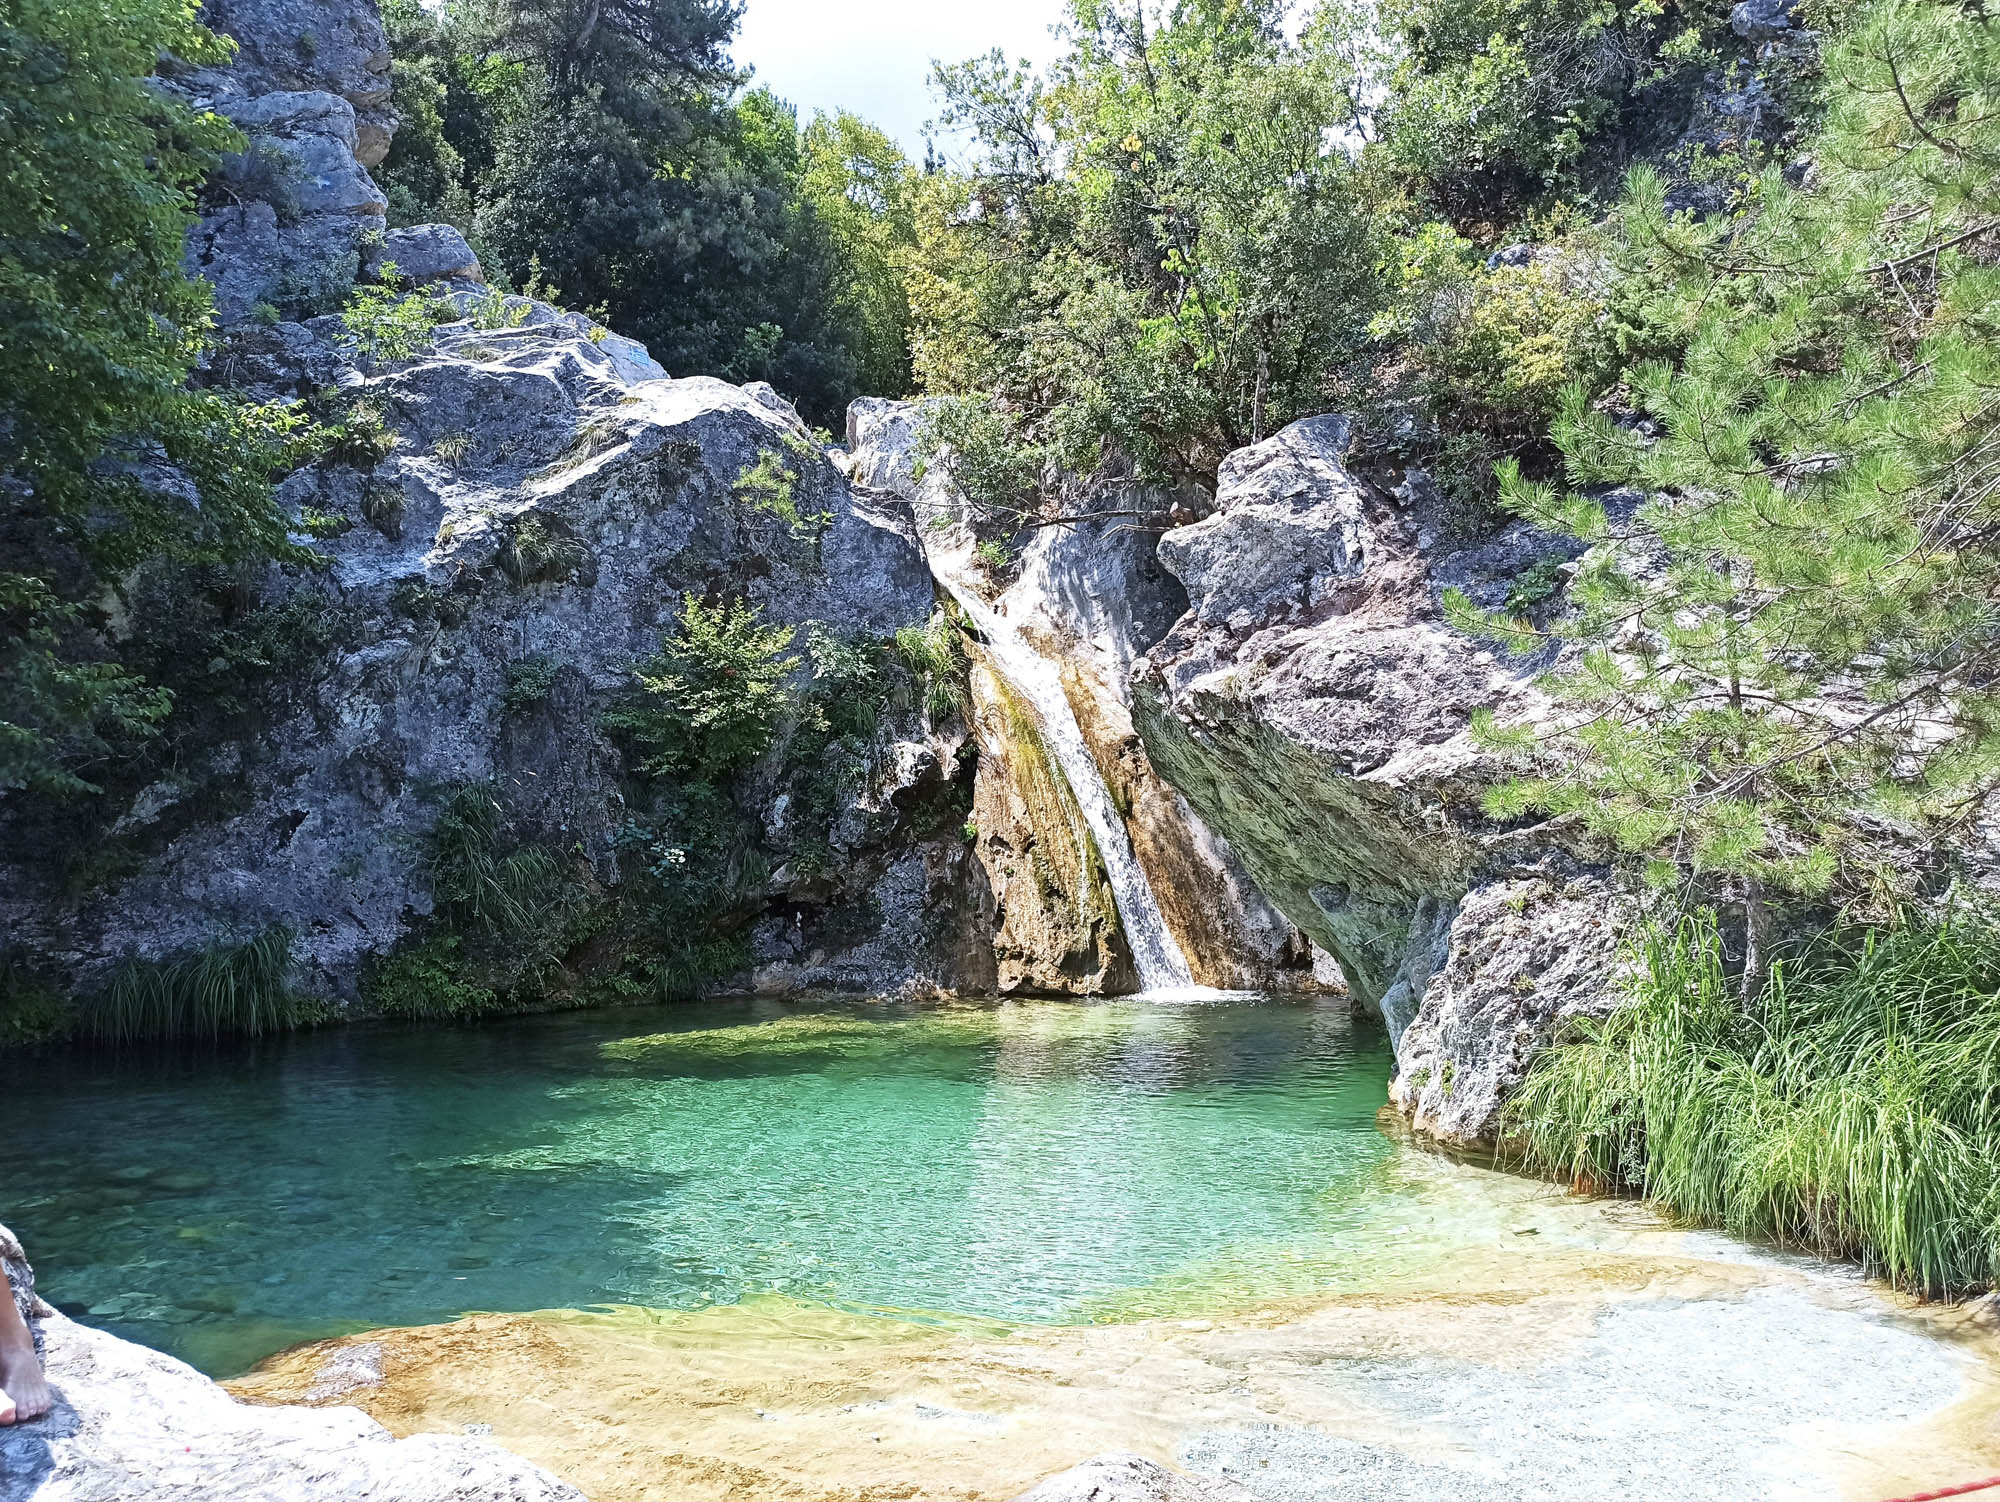 wodospad Agia Kori, lazurowa, czyta woda w sadzawce, panorama, detal